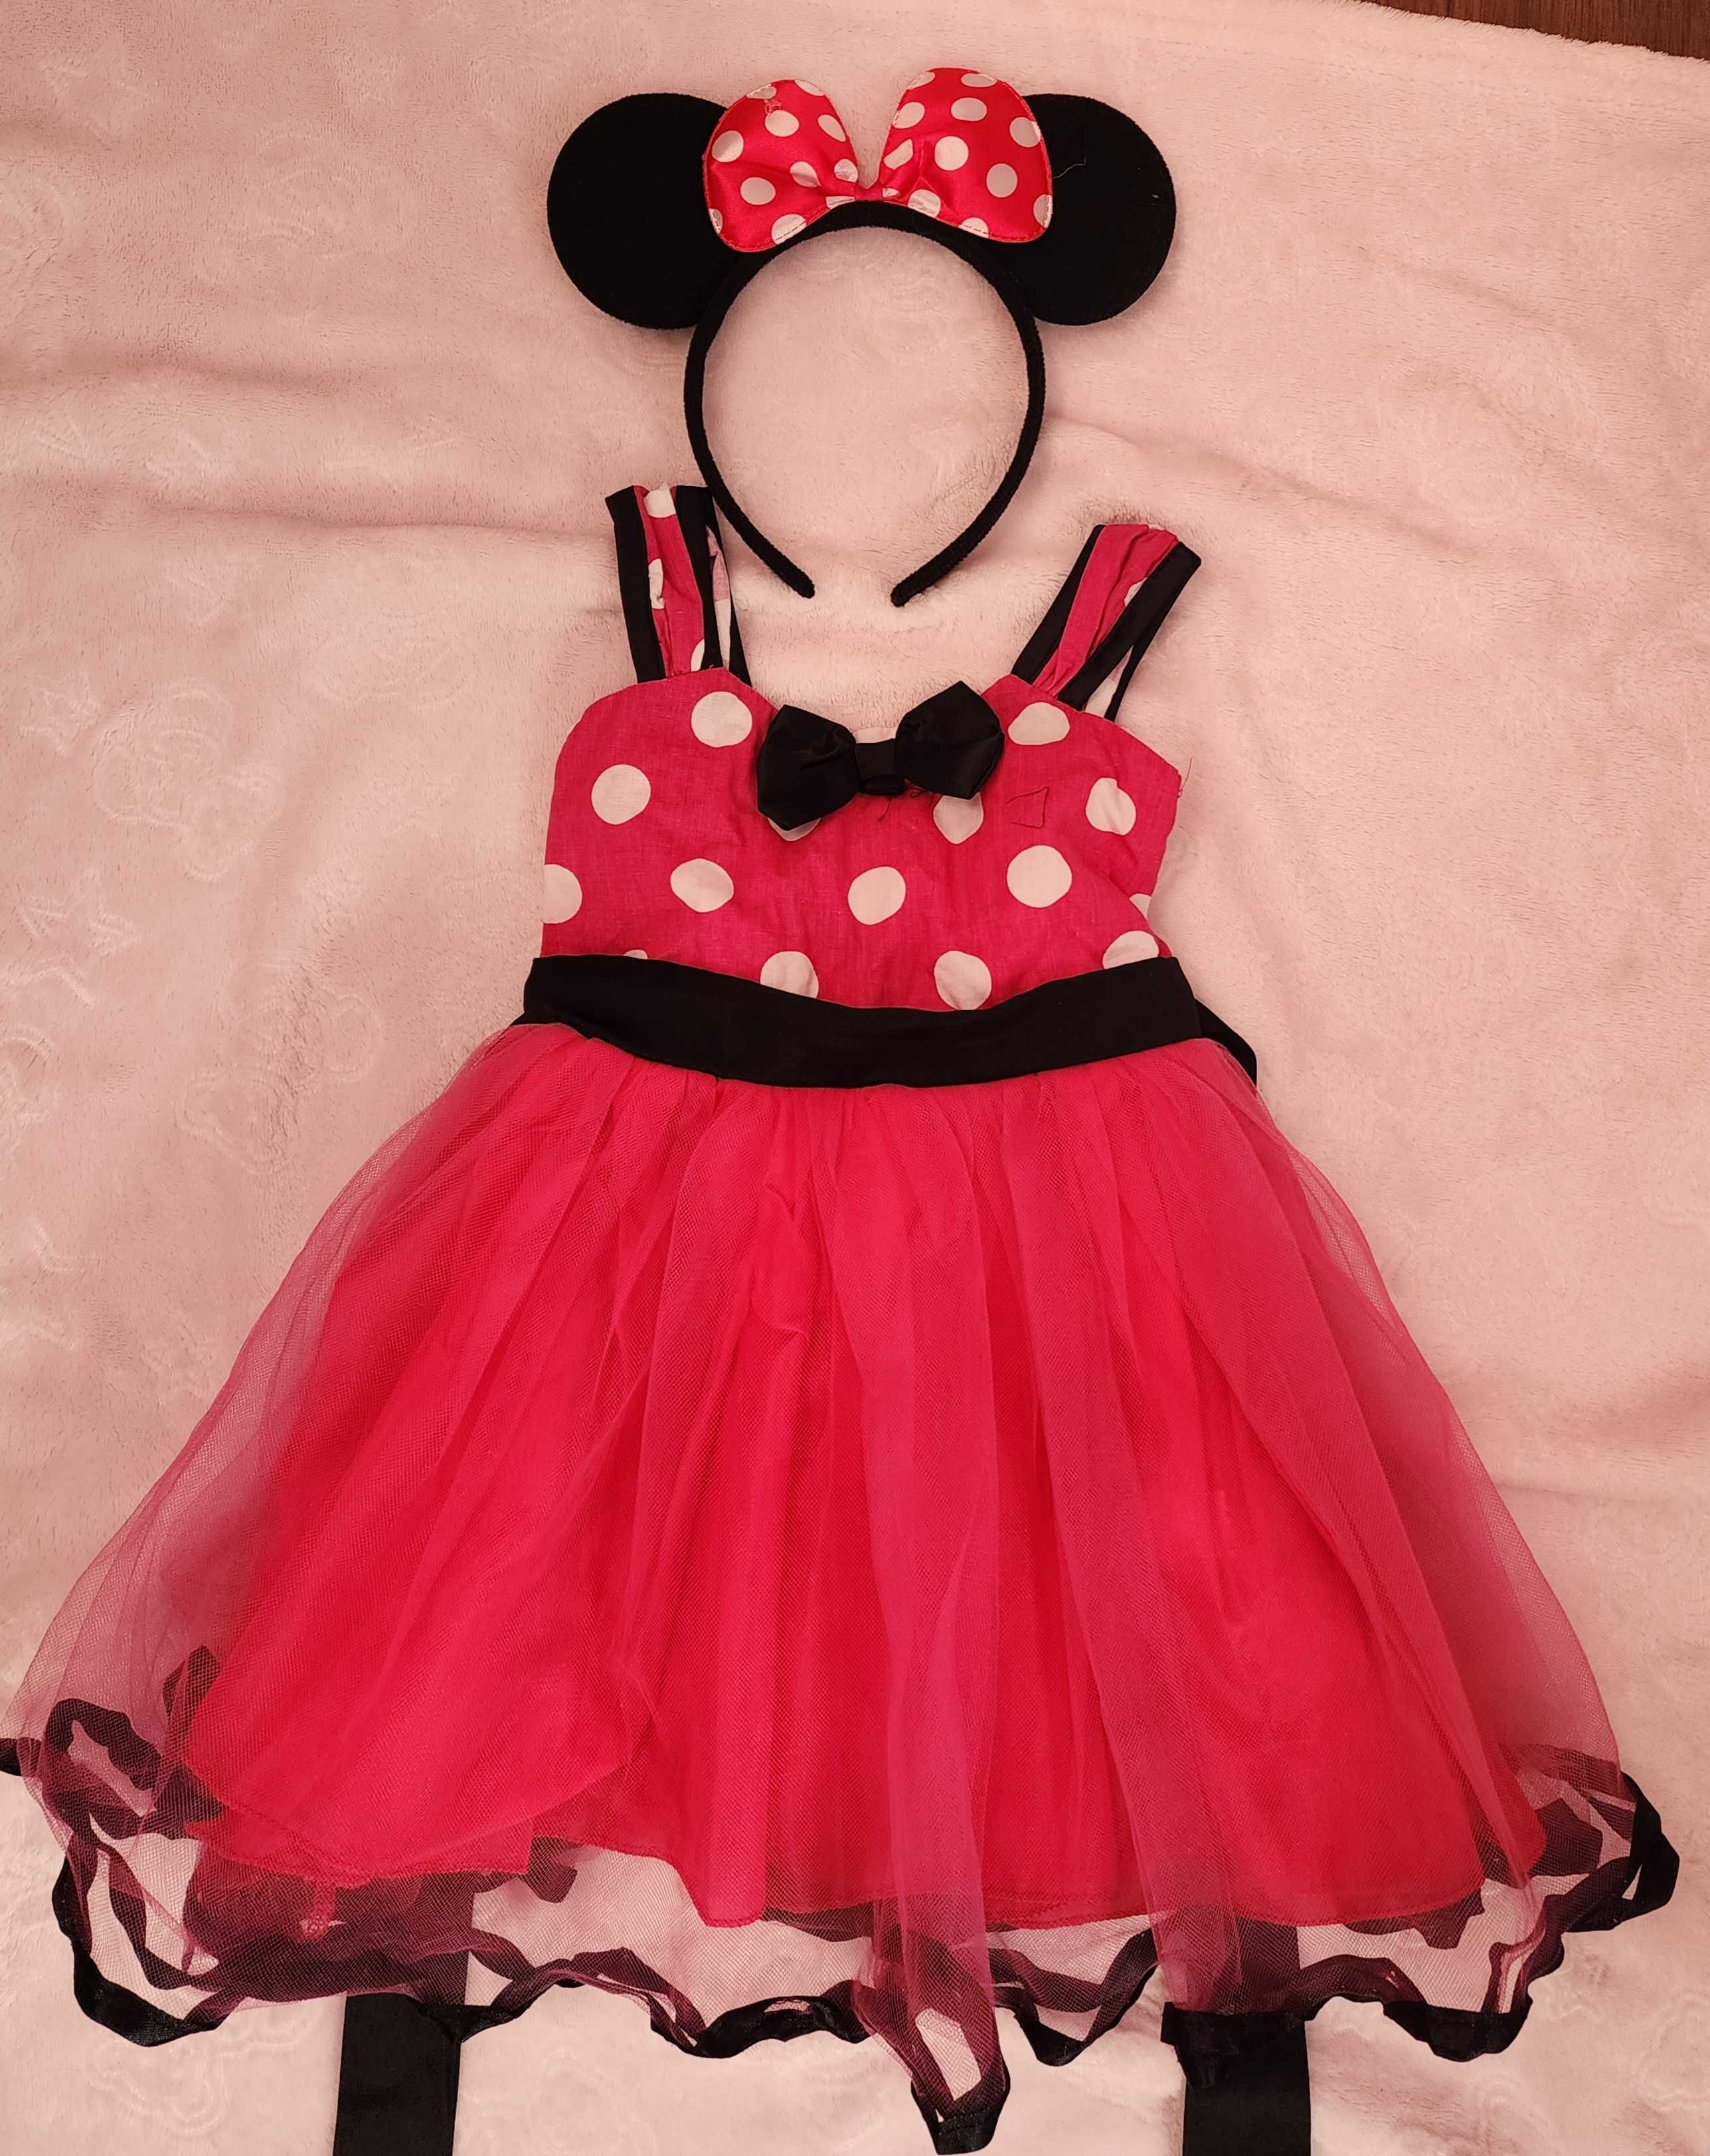 Vând rochiță fetite Minnie Mouse 9 - 12 luni